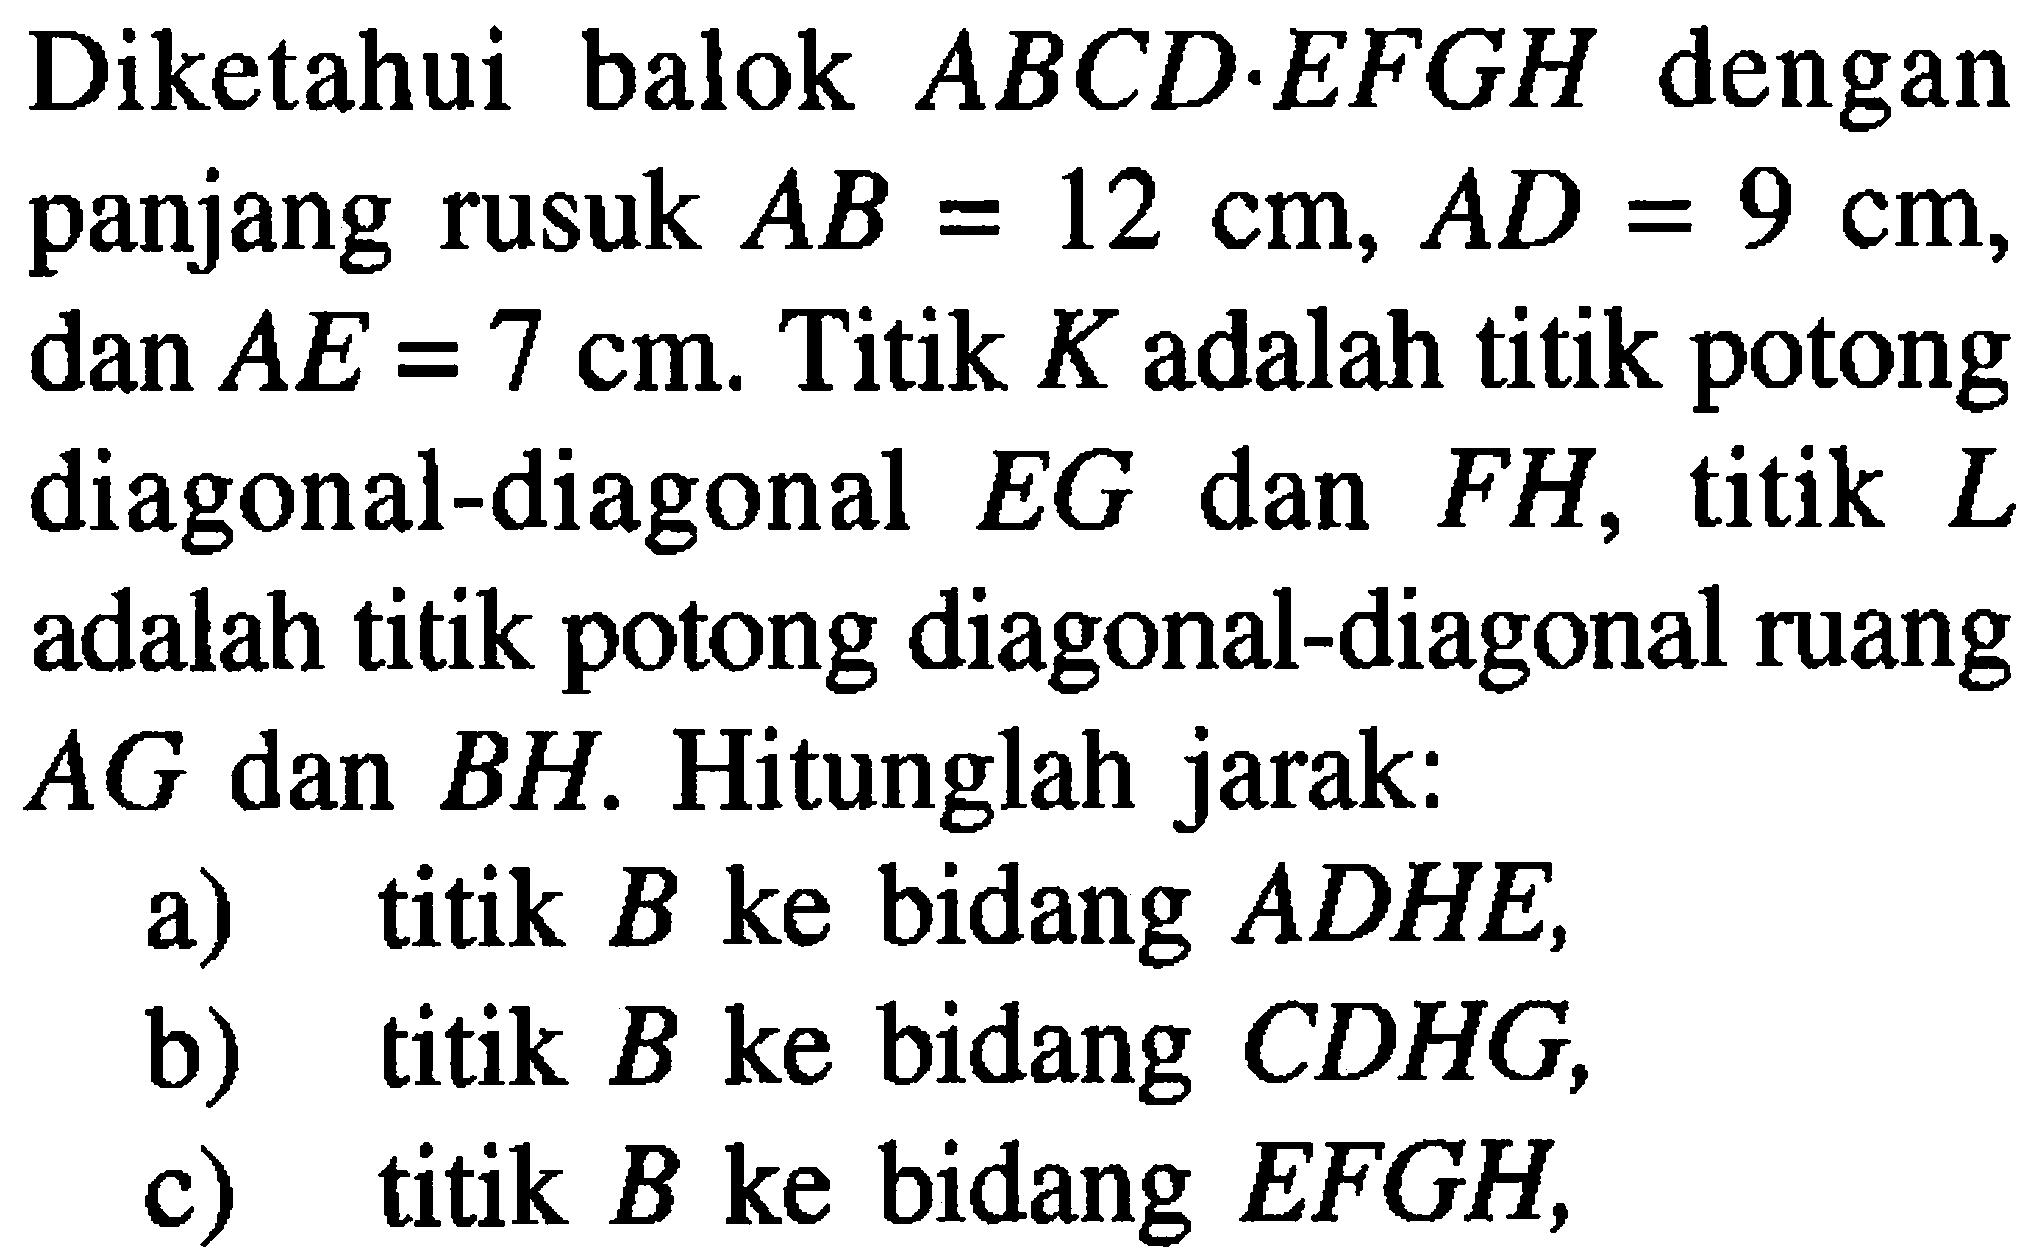 Diketahui balok ABCD.EFGH dengan panjang rusuk AB=12 cm, AD=9 cm, dan AE=7 cm. Titik K adalah titik potong diagonal-diagonal EG dan FH, titik L adalah titik potong diagonal-diagonal ruang AG dan BH. Hitunglah jarak: a) titik B ke bidang ADHE, b) titik B ke bidang CDHG, c) titik B ke bidang EFGH,